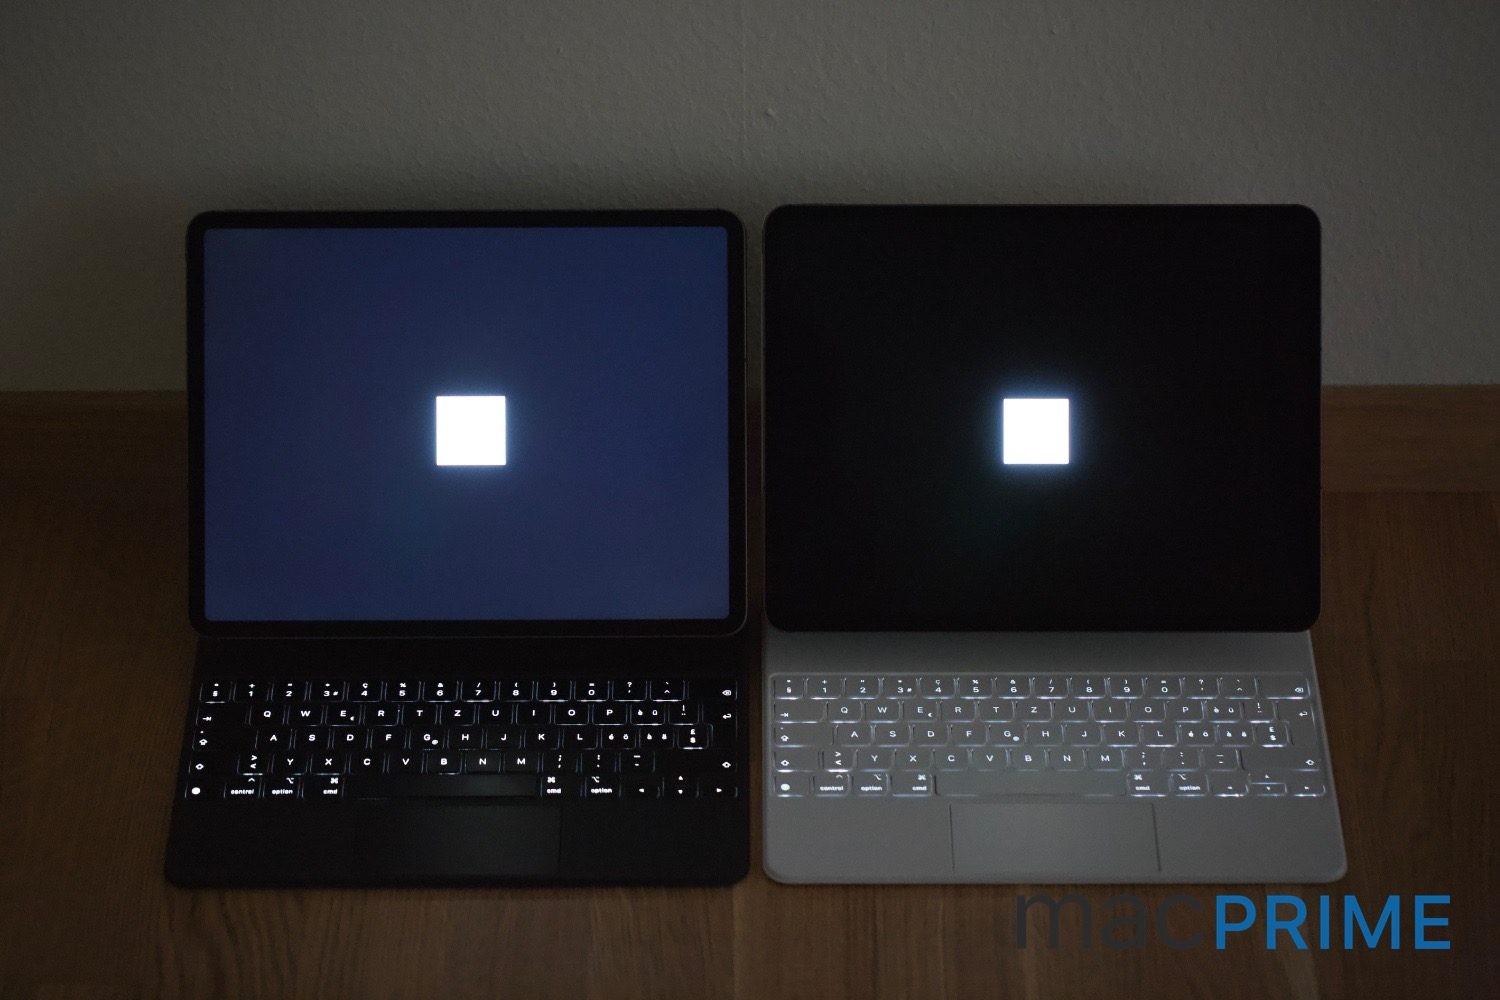 iPad Pro 2020 mit LCD links vs. iPad Pro 2021 mit mini-LED Display rechts. Beide Geräte zeigen ein komplett schwarzes Bild mit voll-weissem Quadrat und sind auf 100% Helligkeit eingestellt. Das Foto wurde in einem abgedunkelten Raum aufgenommen 